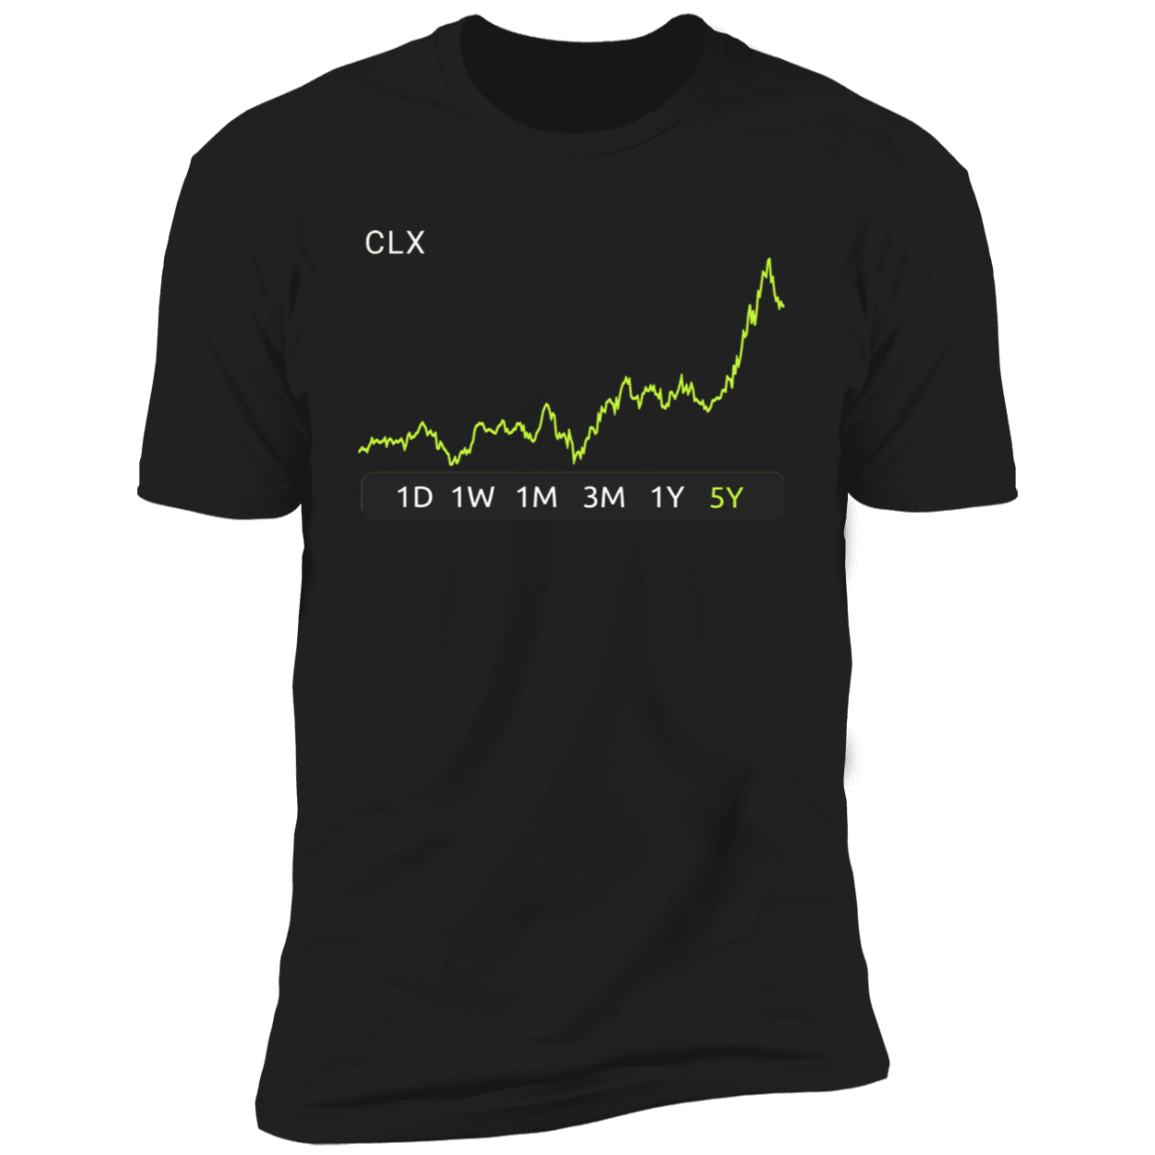 CLX Stock 5y Premium T-Shirt